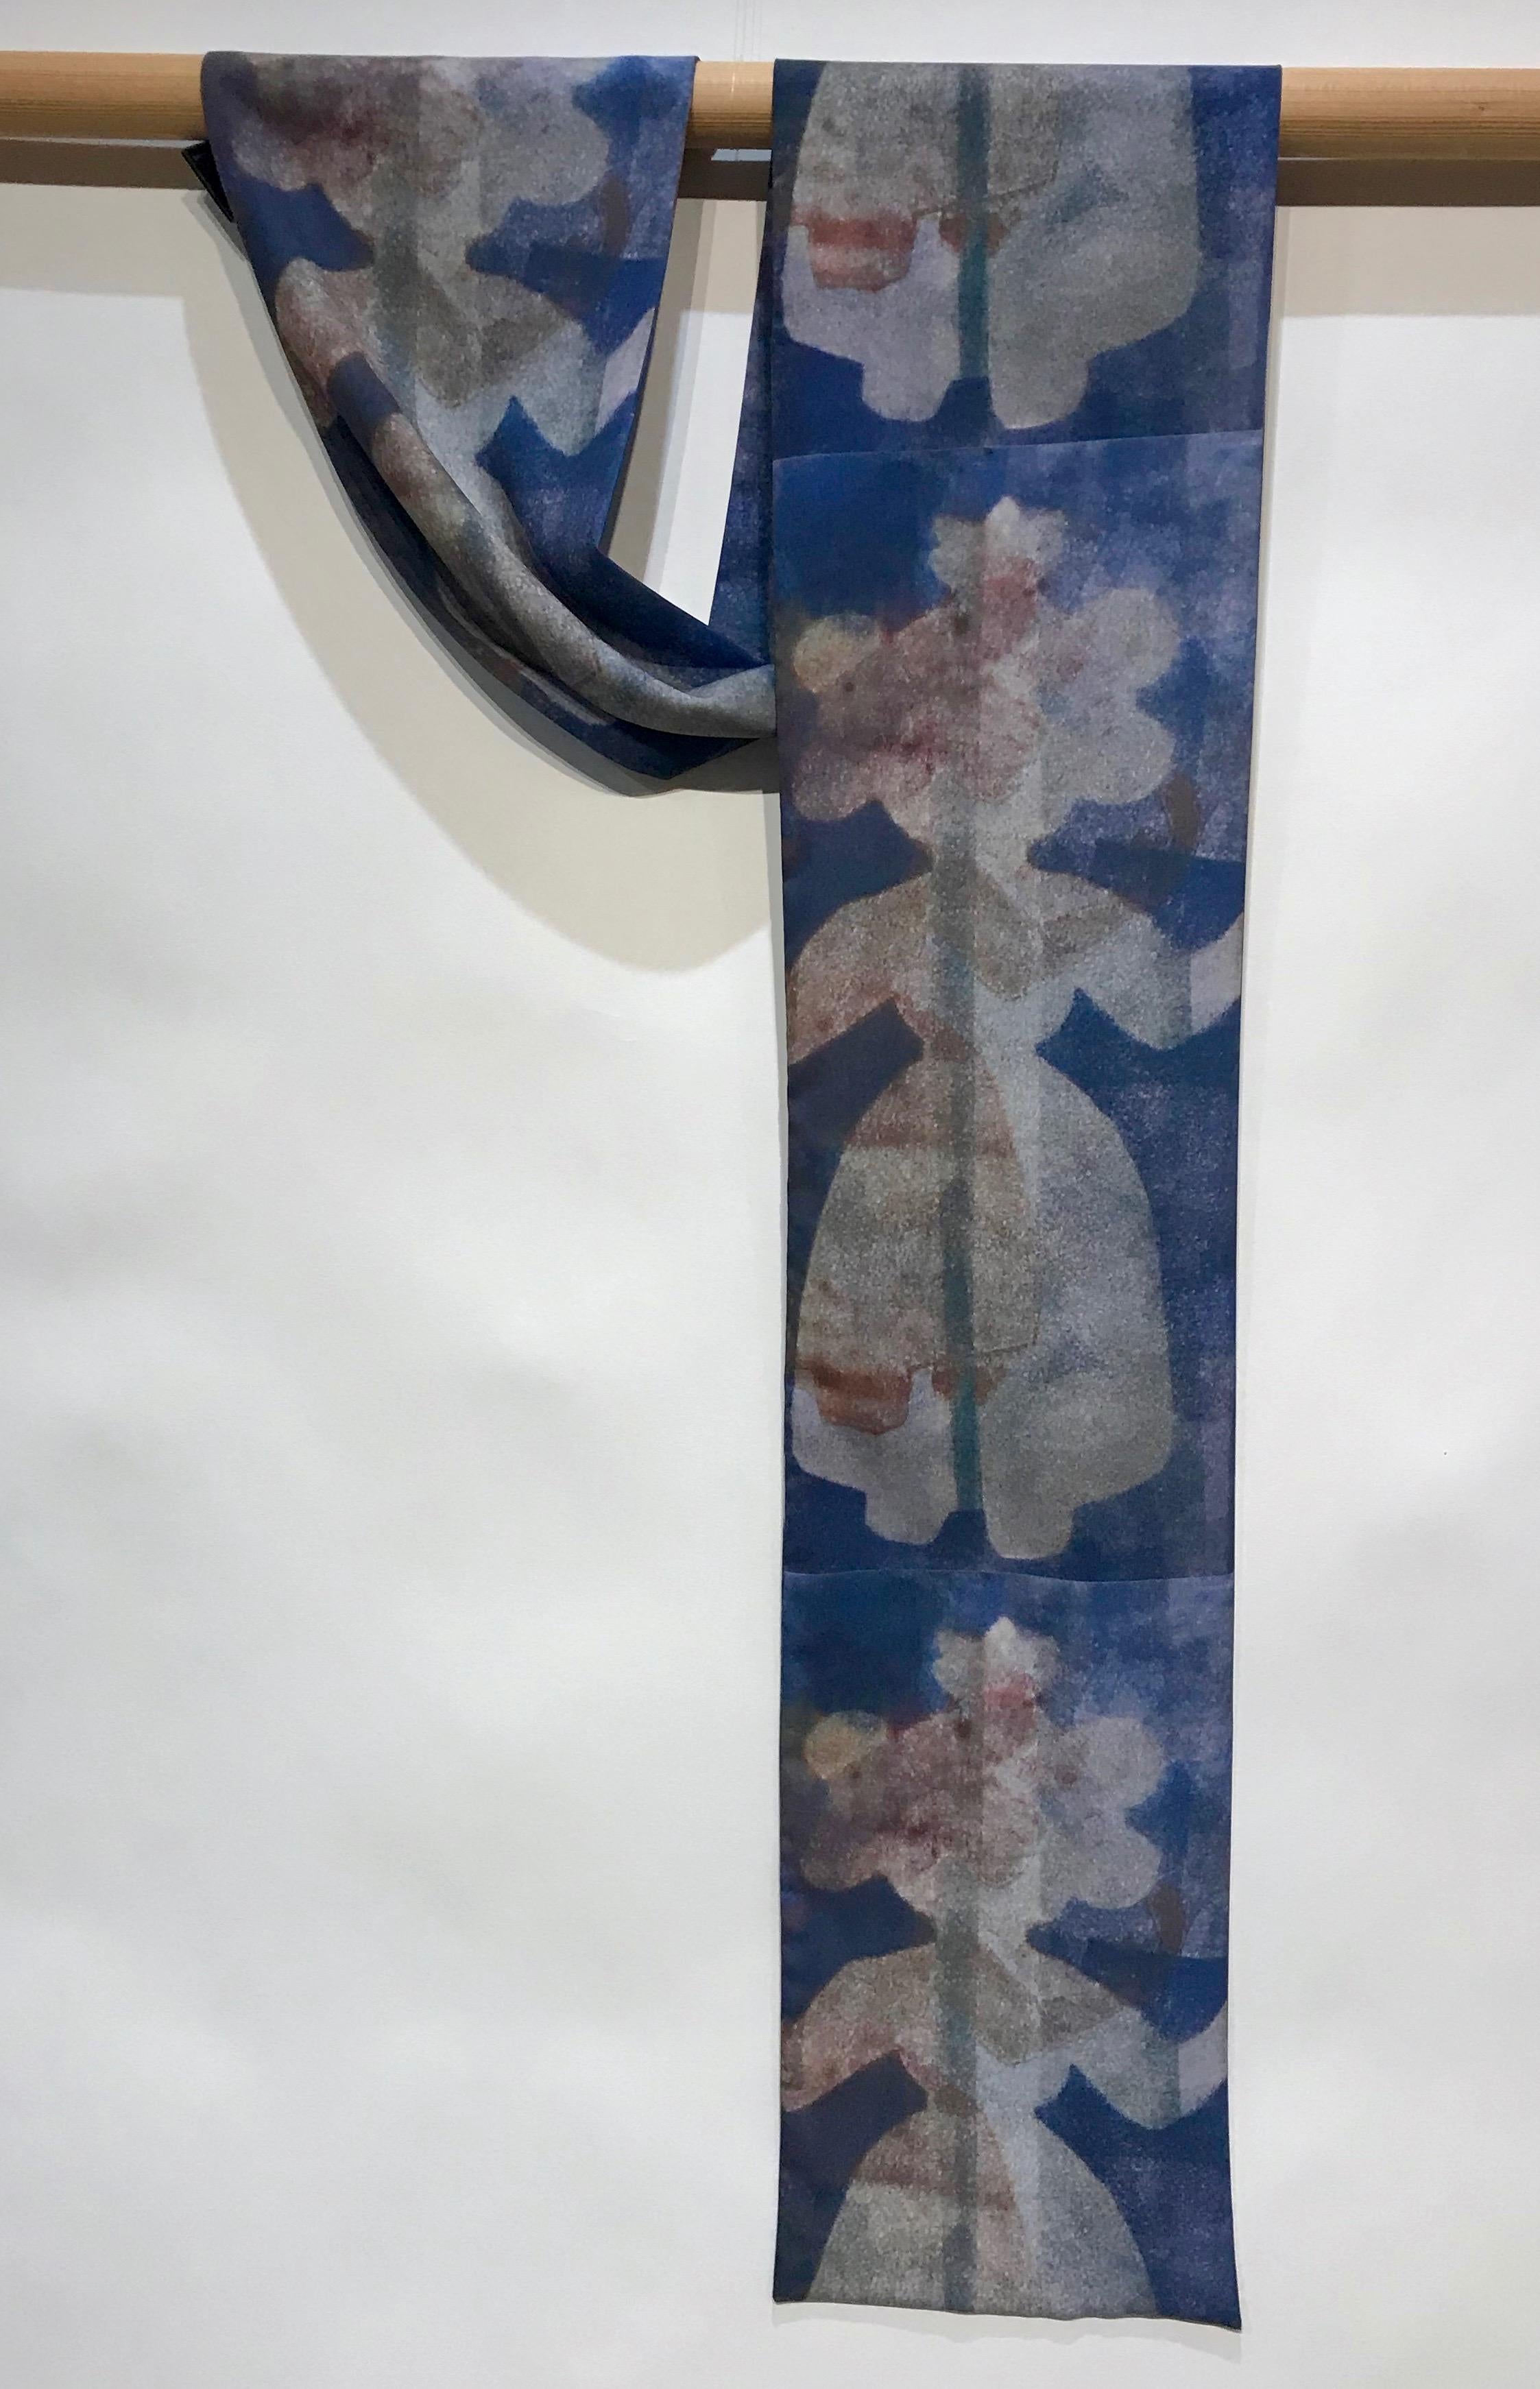 She Stands With Me, pañuelo, arte llevable, azul, blanco, mujer, Nativo Americano
poli crepe de chine. 2 capas que muestran el diseño a cada lado del pañuelo

Melanie A. Yazzie (Navajo-Diné) es una artista multimedia de gran prestigio, conocida por